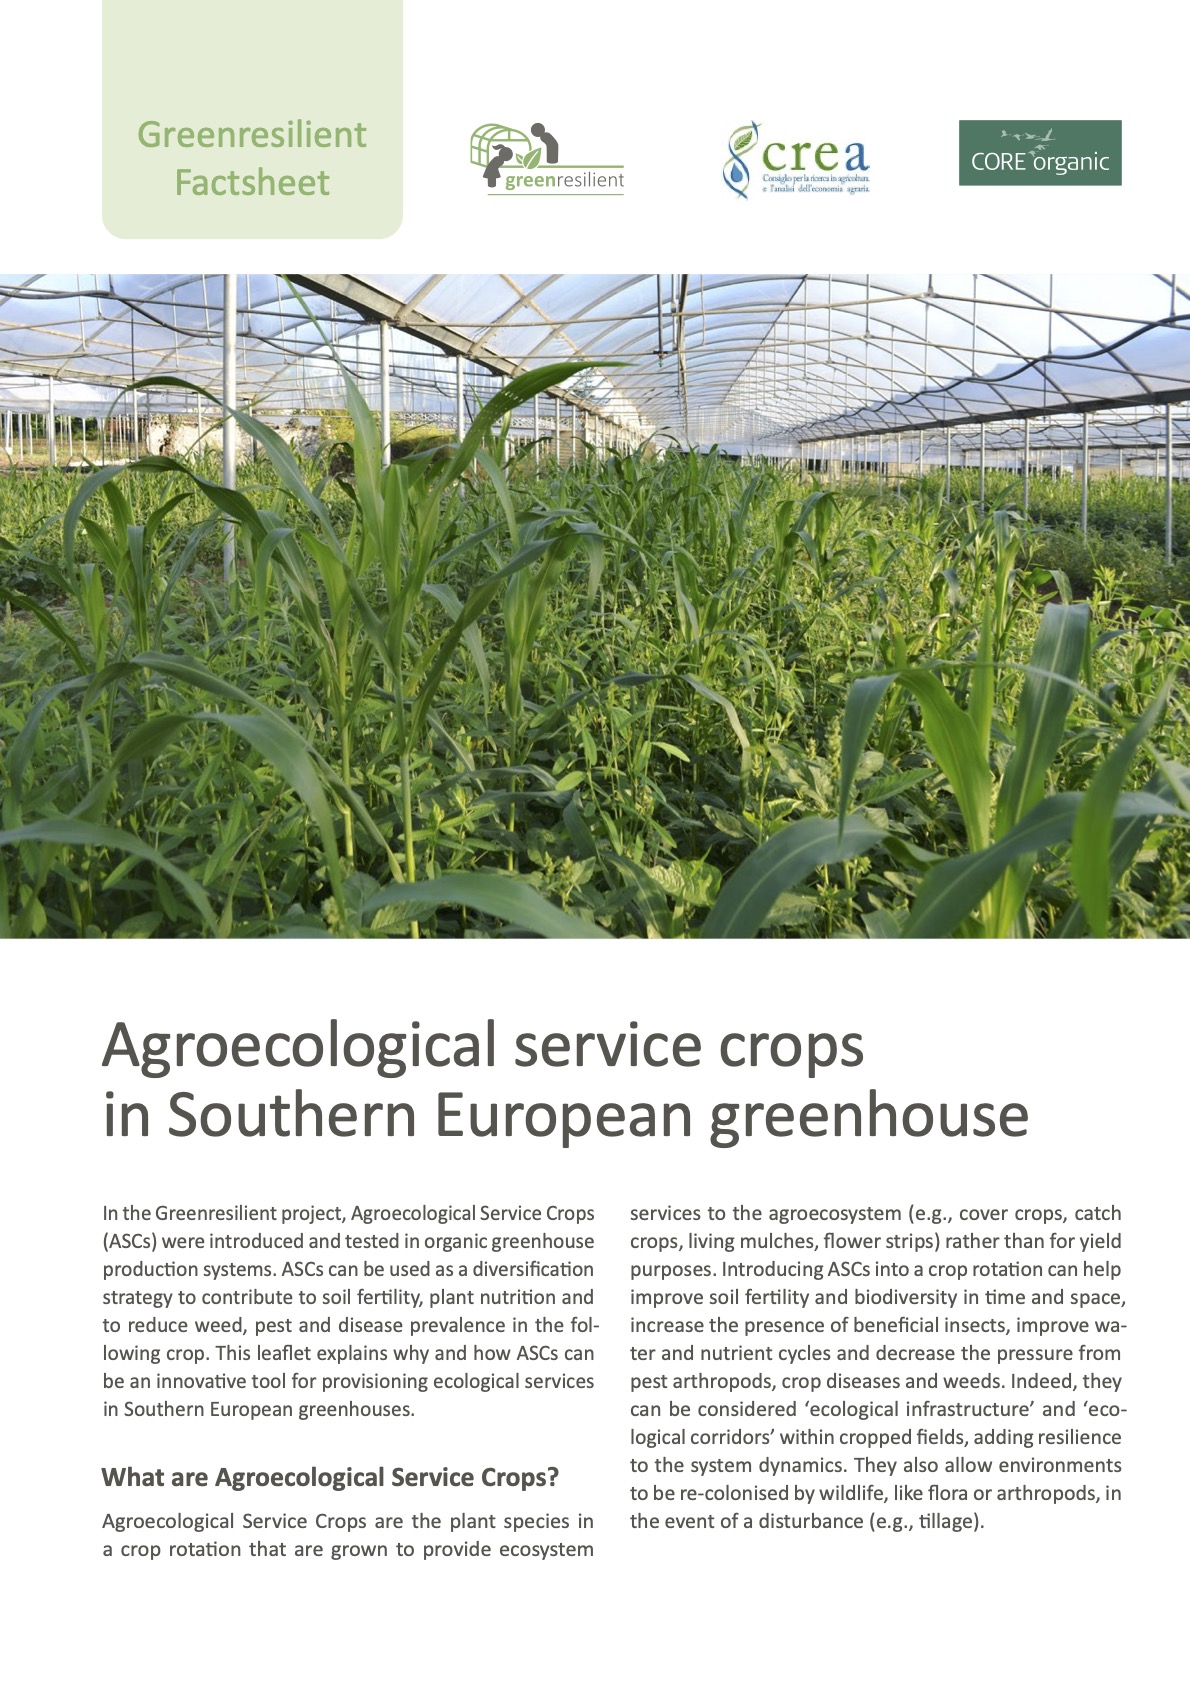 Agroekologiczne uprawy usługowe w szklarniach w Europie Południowej (Zestawienie informacyjne Greenresilient)